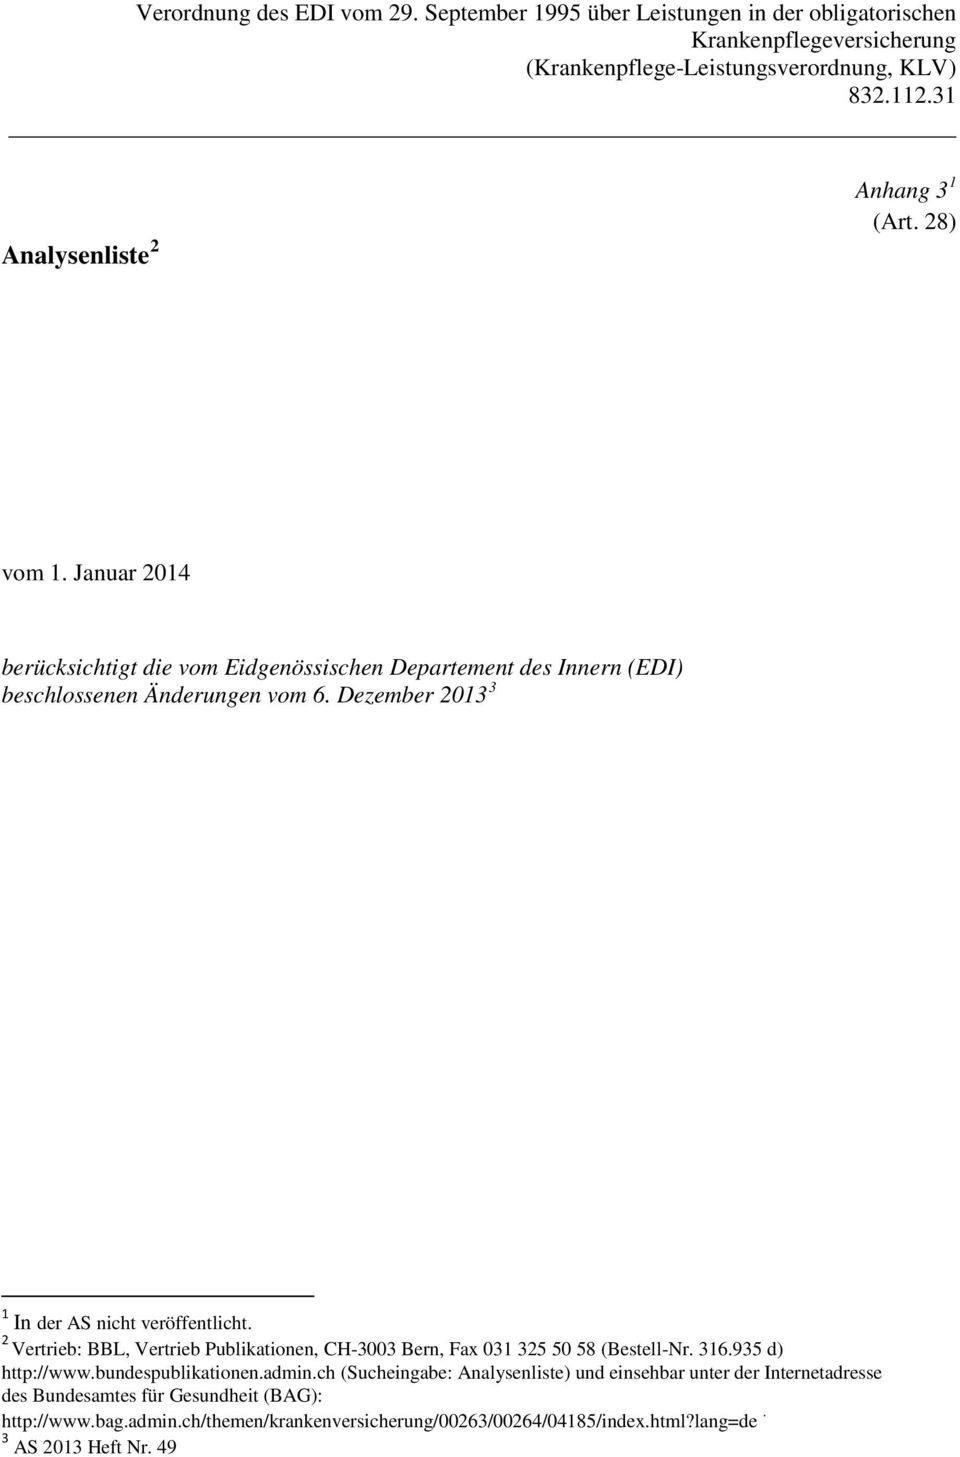 Dezember 2013 3 1 In der AS nicht veröffentlicht. 2 Vertrieb: BBL, Vertrieb Publikationen, CH-3003 Bern, Fax 031 325 50 58 (Bestell-Nr. 316.935 d) http://www.bundespublikationen.